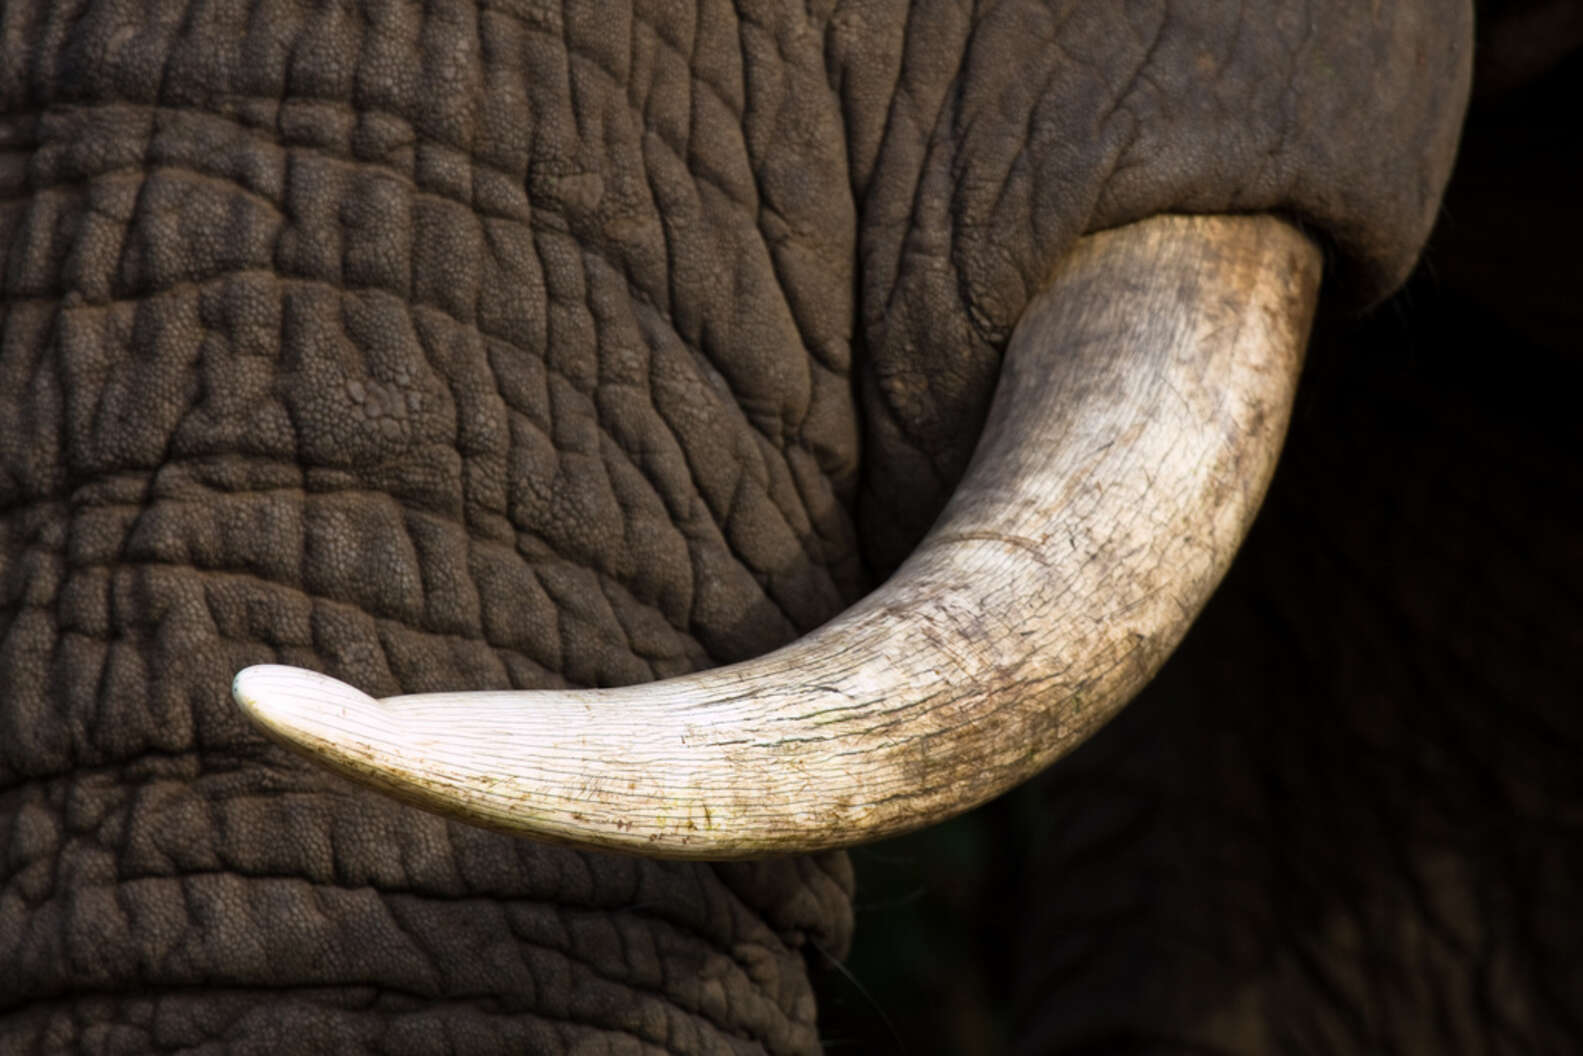 Black ebony elephant with ivory tusks